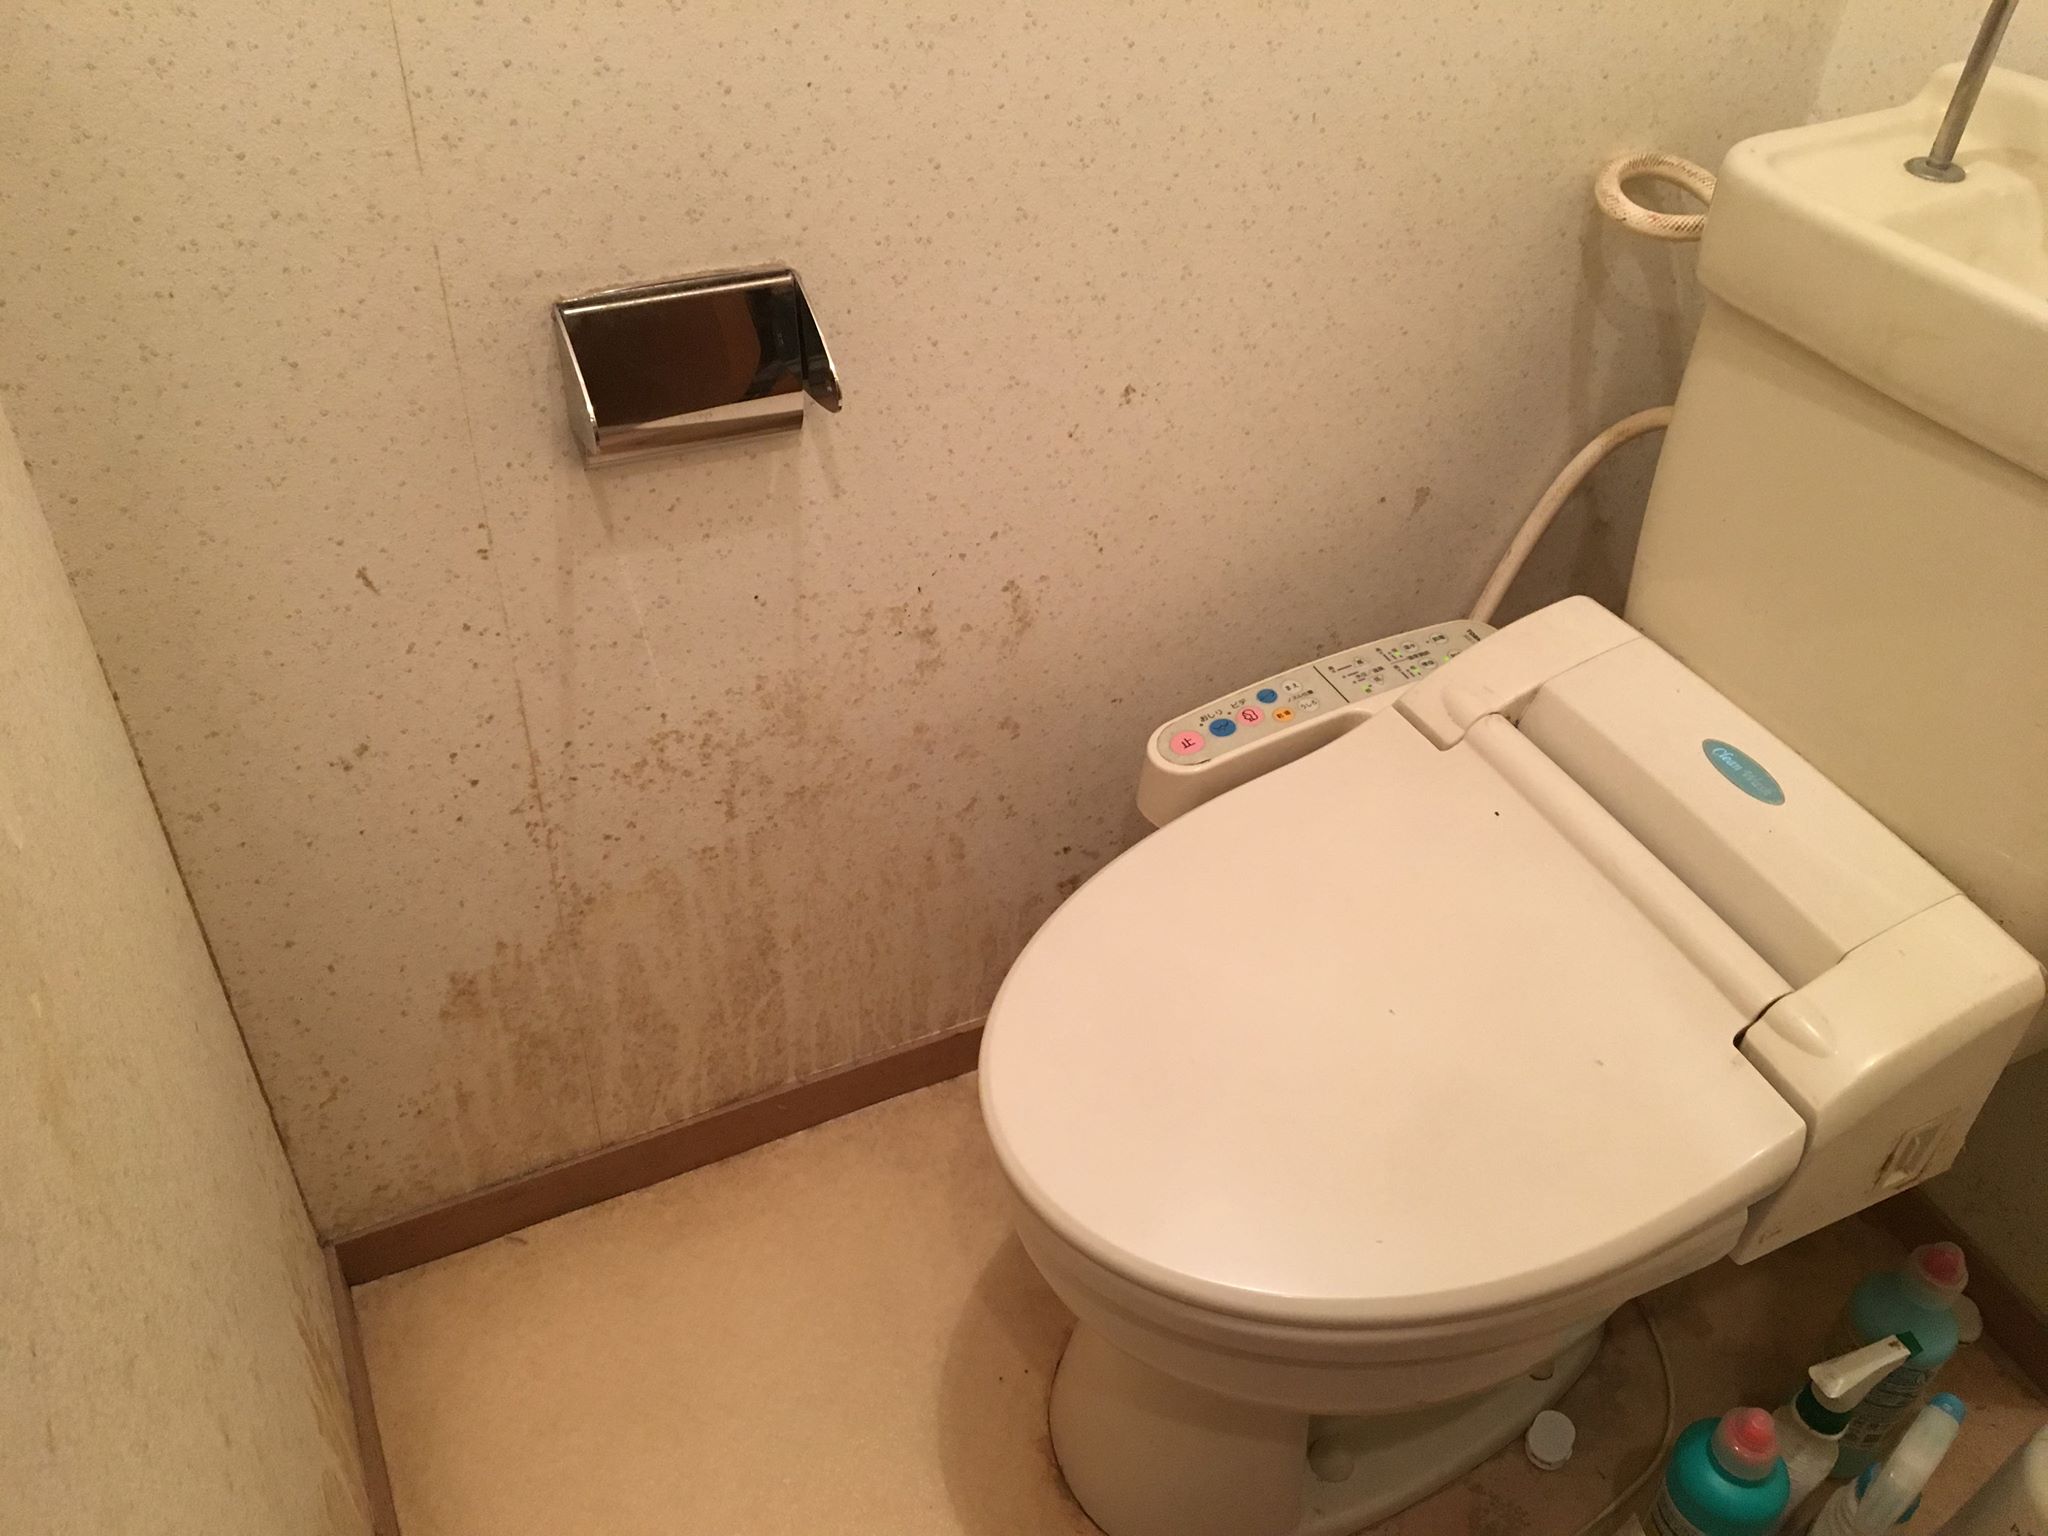 密室キケン 死にかけた トイレの黒カビを除去する方法と注意点 カビペディア ハーツクリーン監修年間0万人がみるカビ取り情報サイト